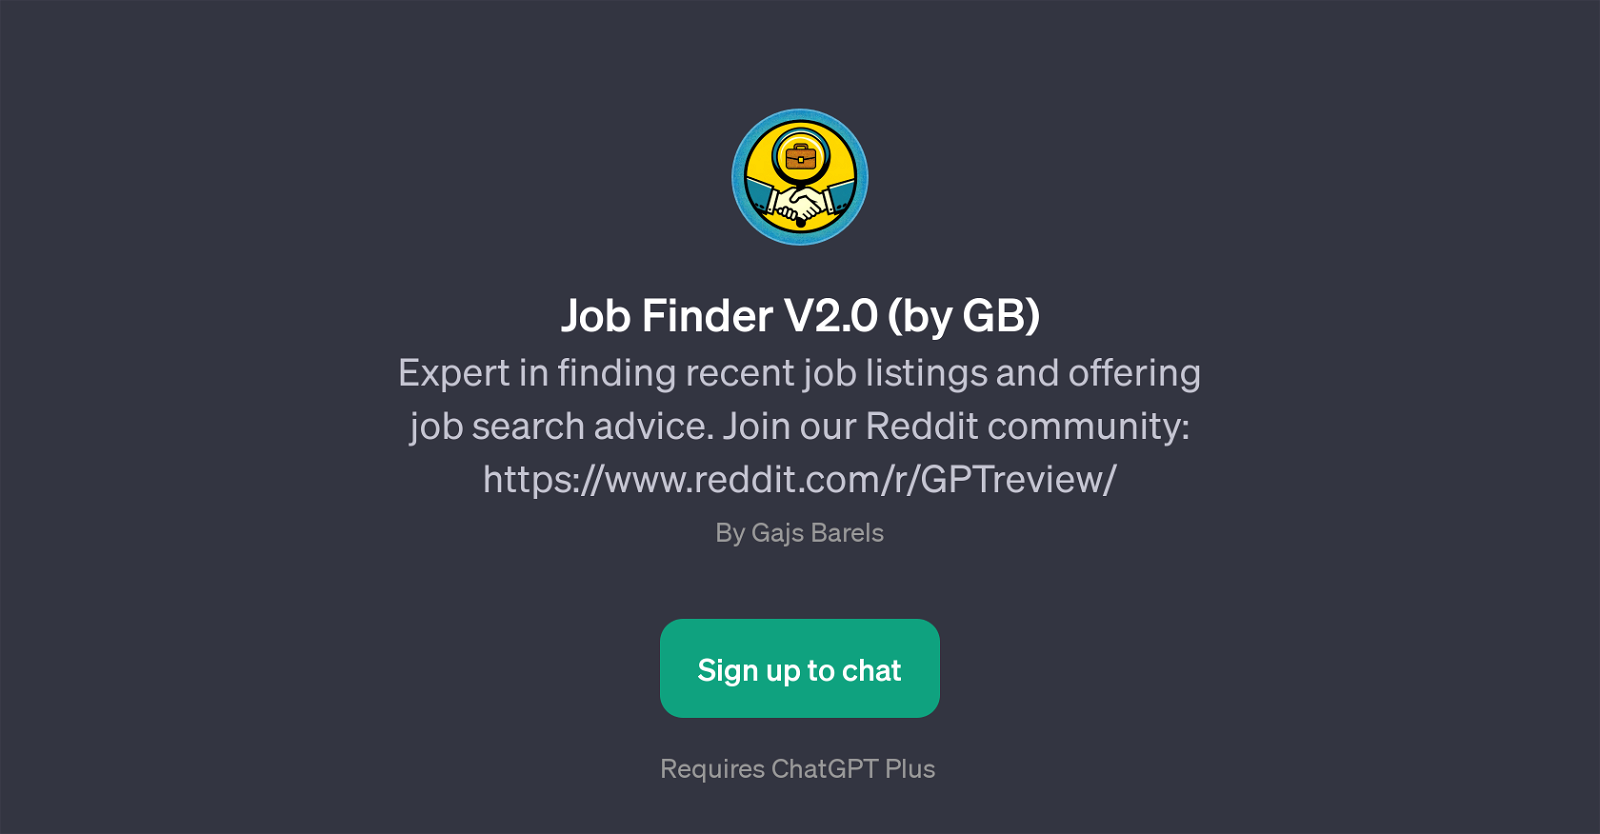 Job Finder V2.0 (by GB) website